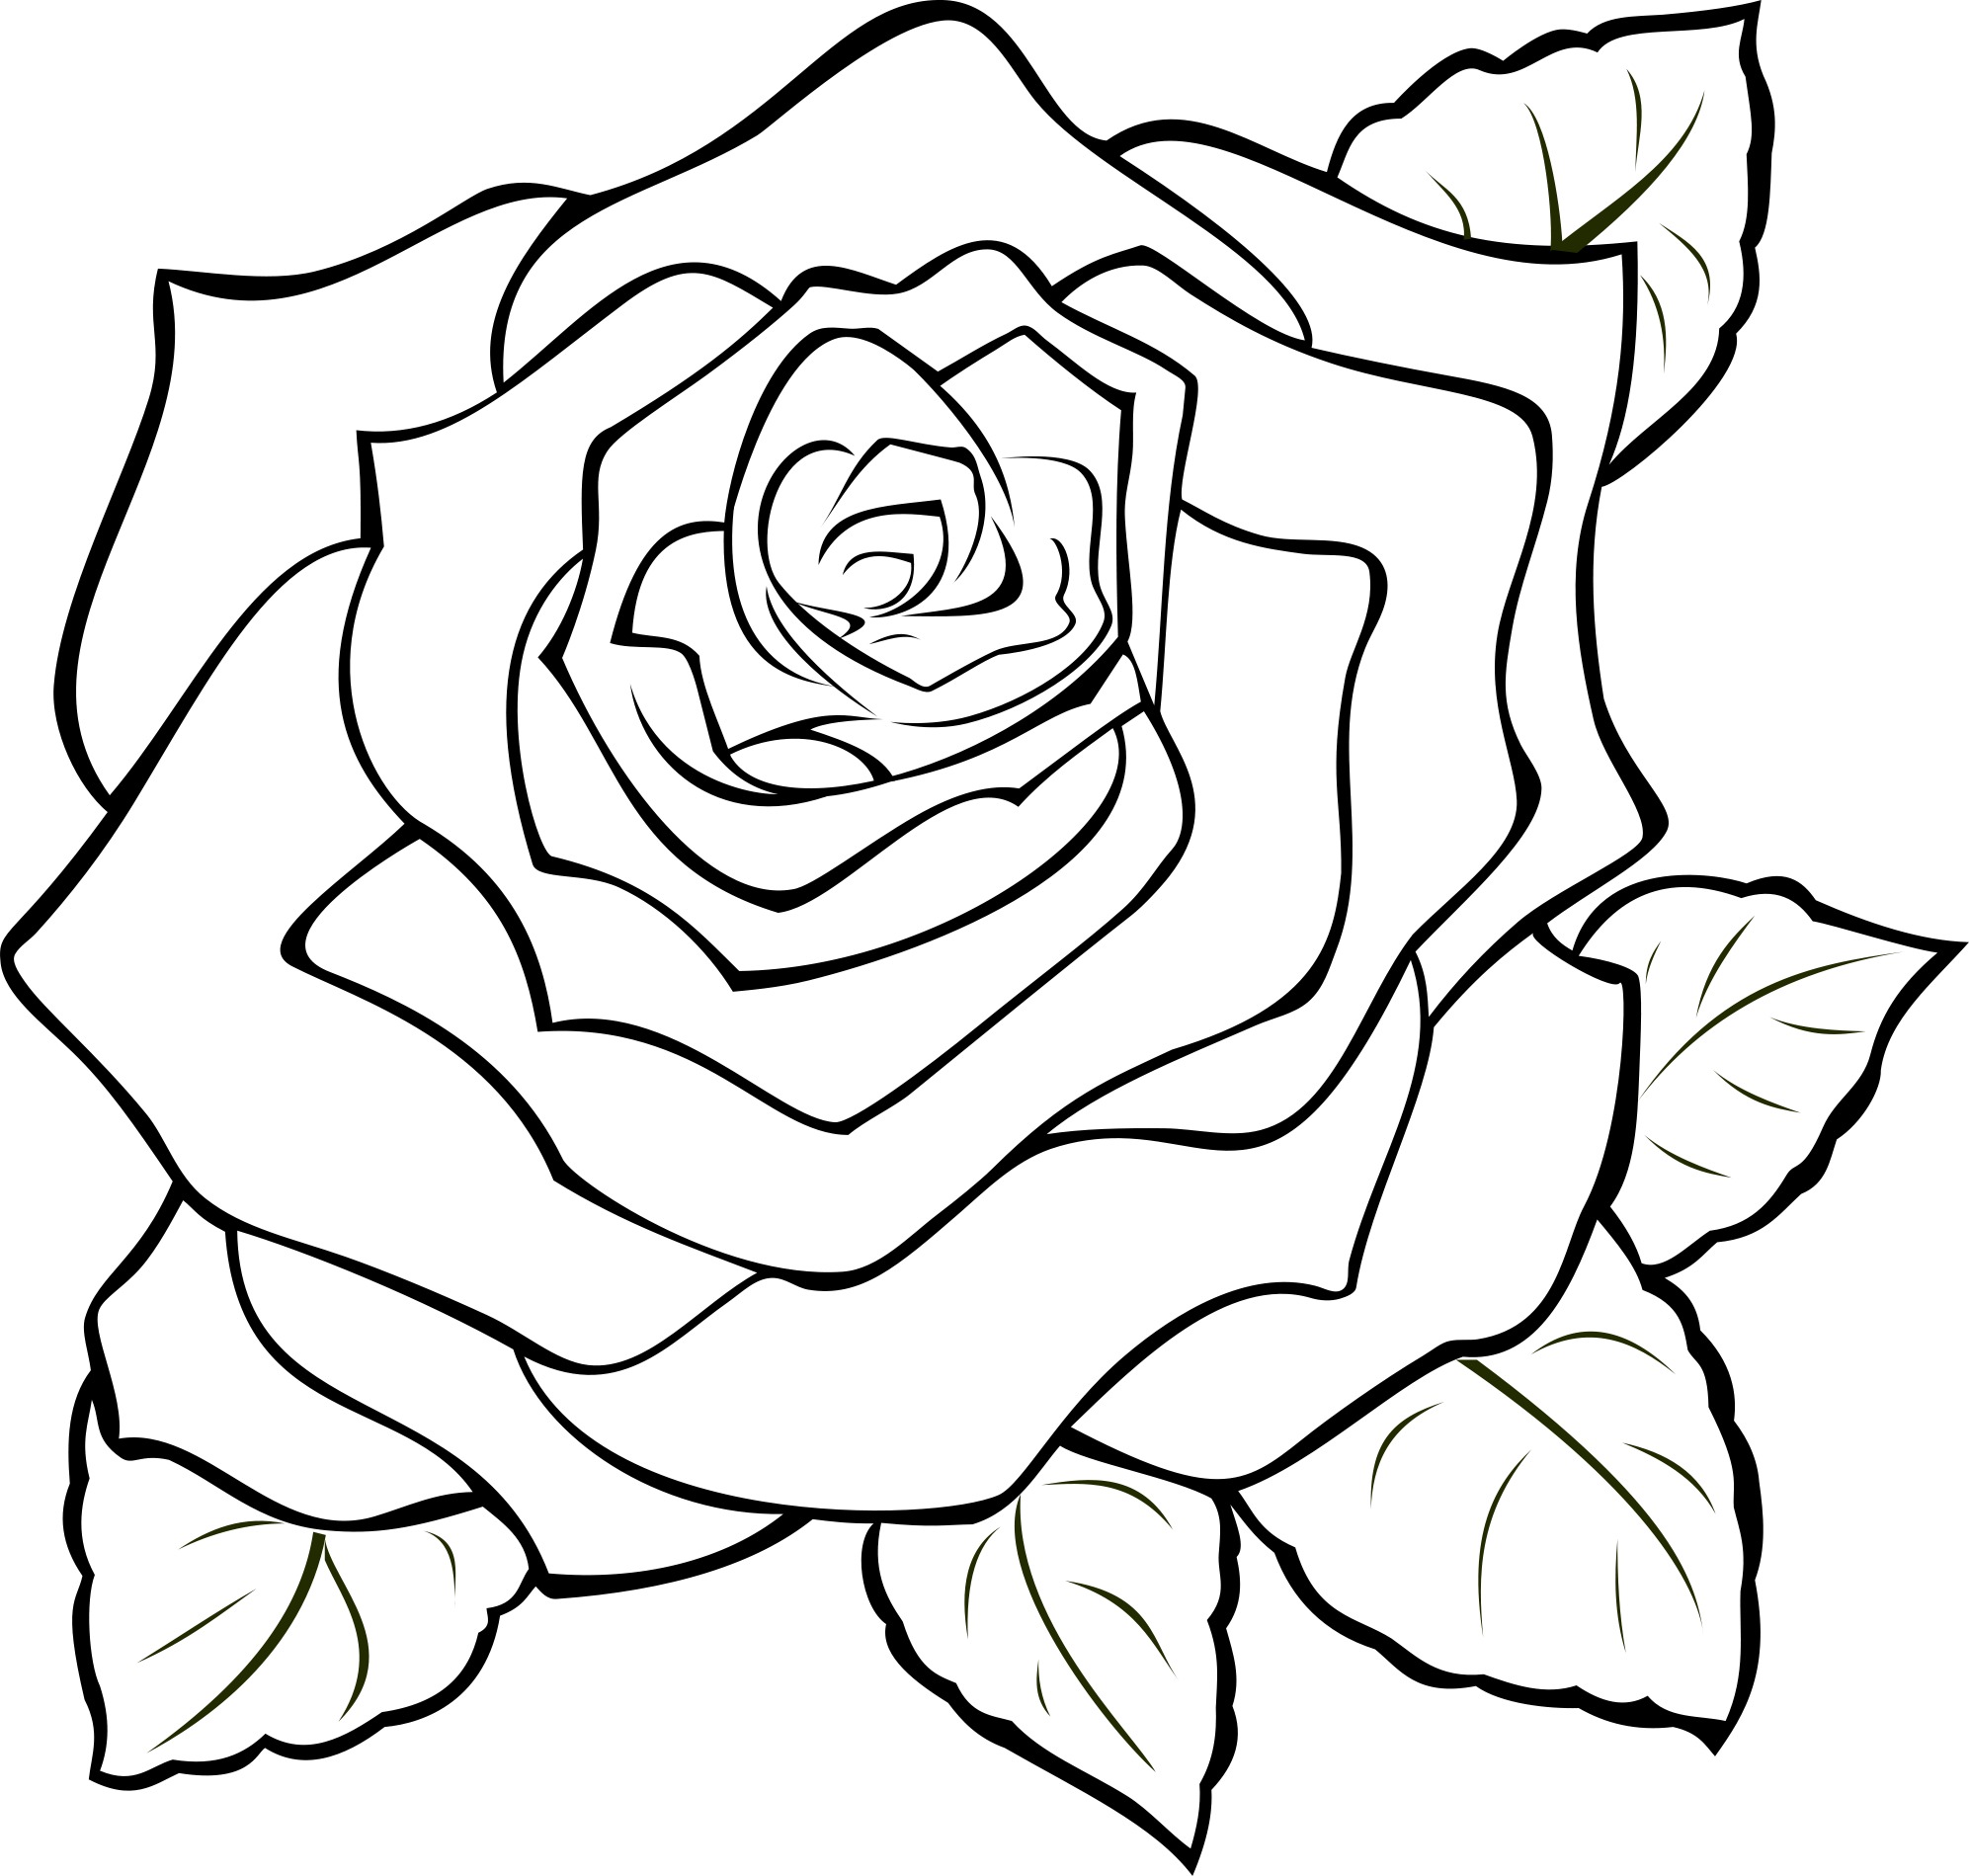 Розочка раскраска. Цветы. Раскраска. Раскраски цветы красивые. Рисунок розы для срисовки.